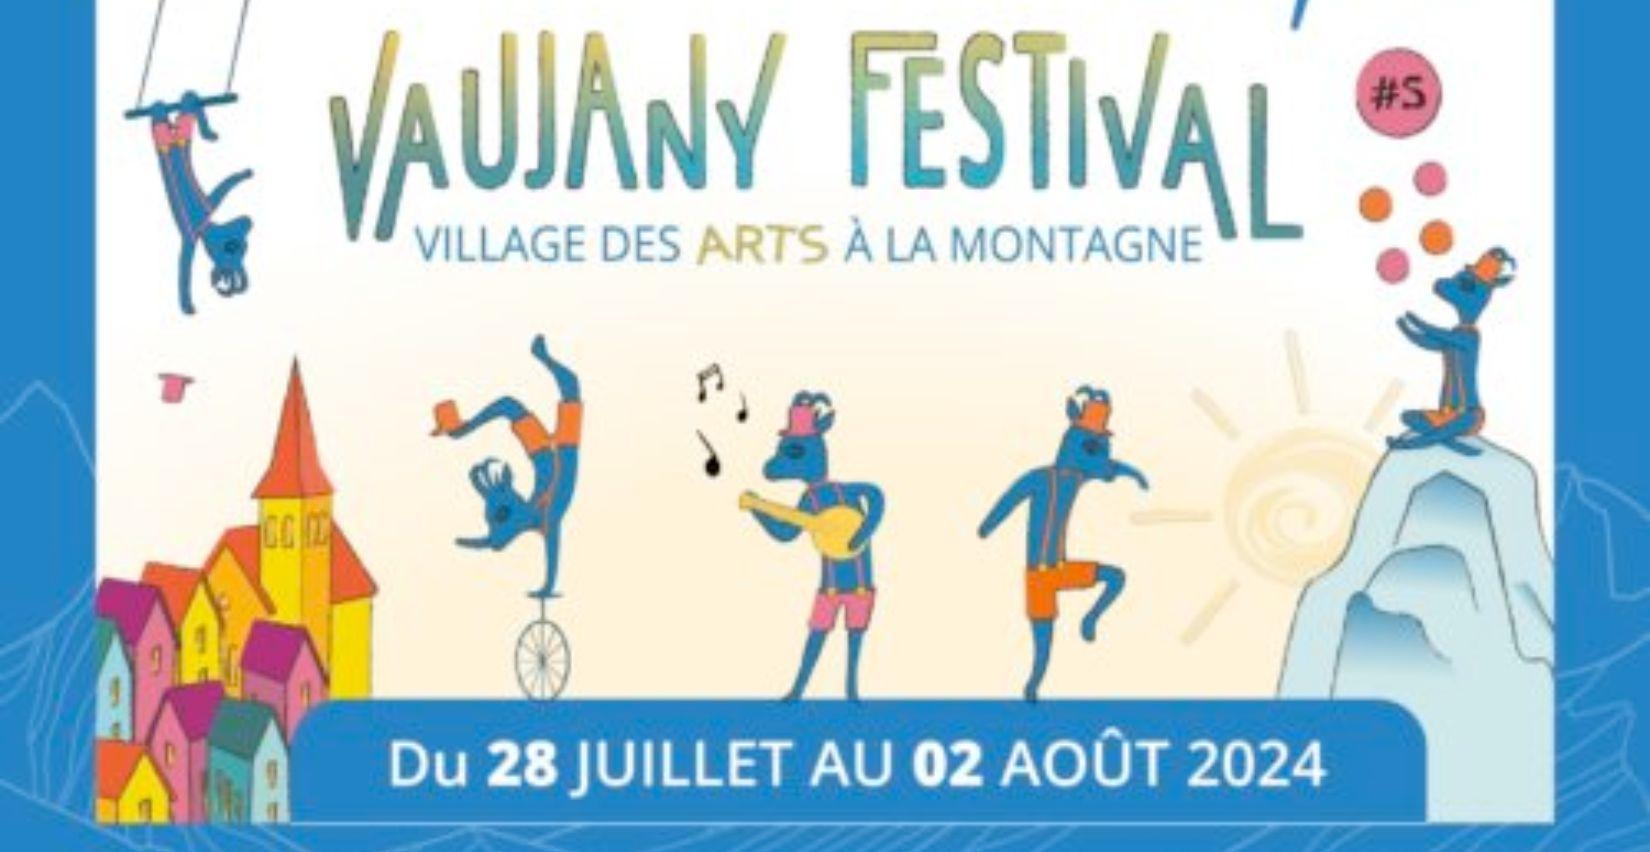 "Le Vaujany festival – Village des Arts à la Montagne", spectacles et activités pour tous, à Vaujany